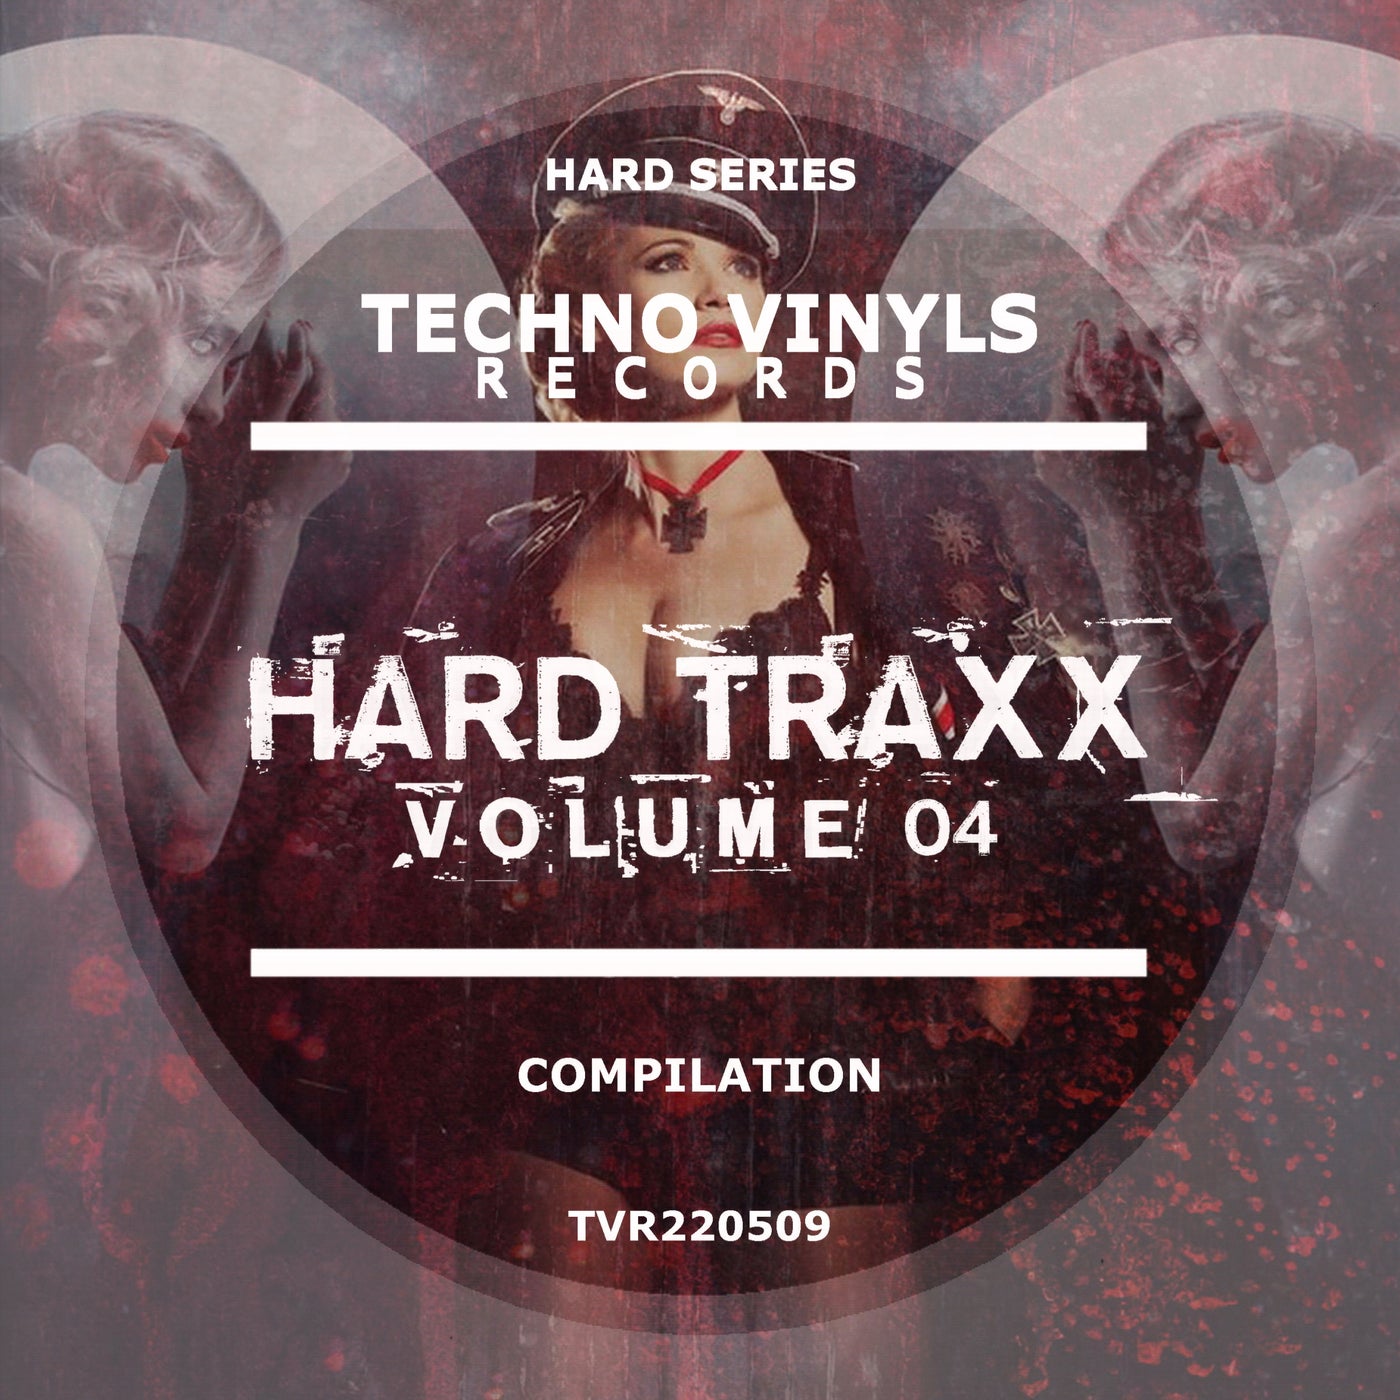 Hard Traxx, Vol. 04